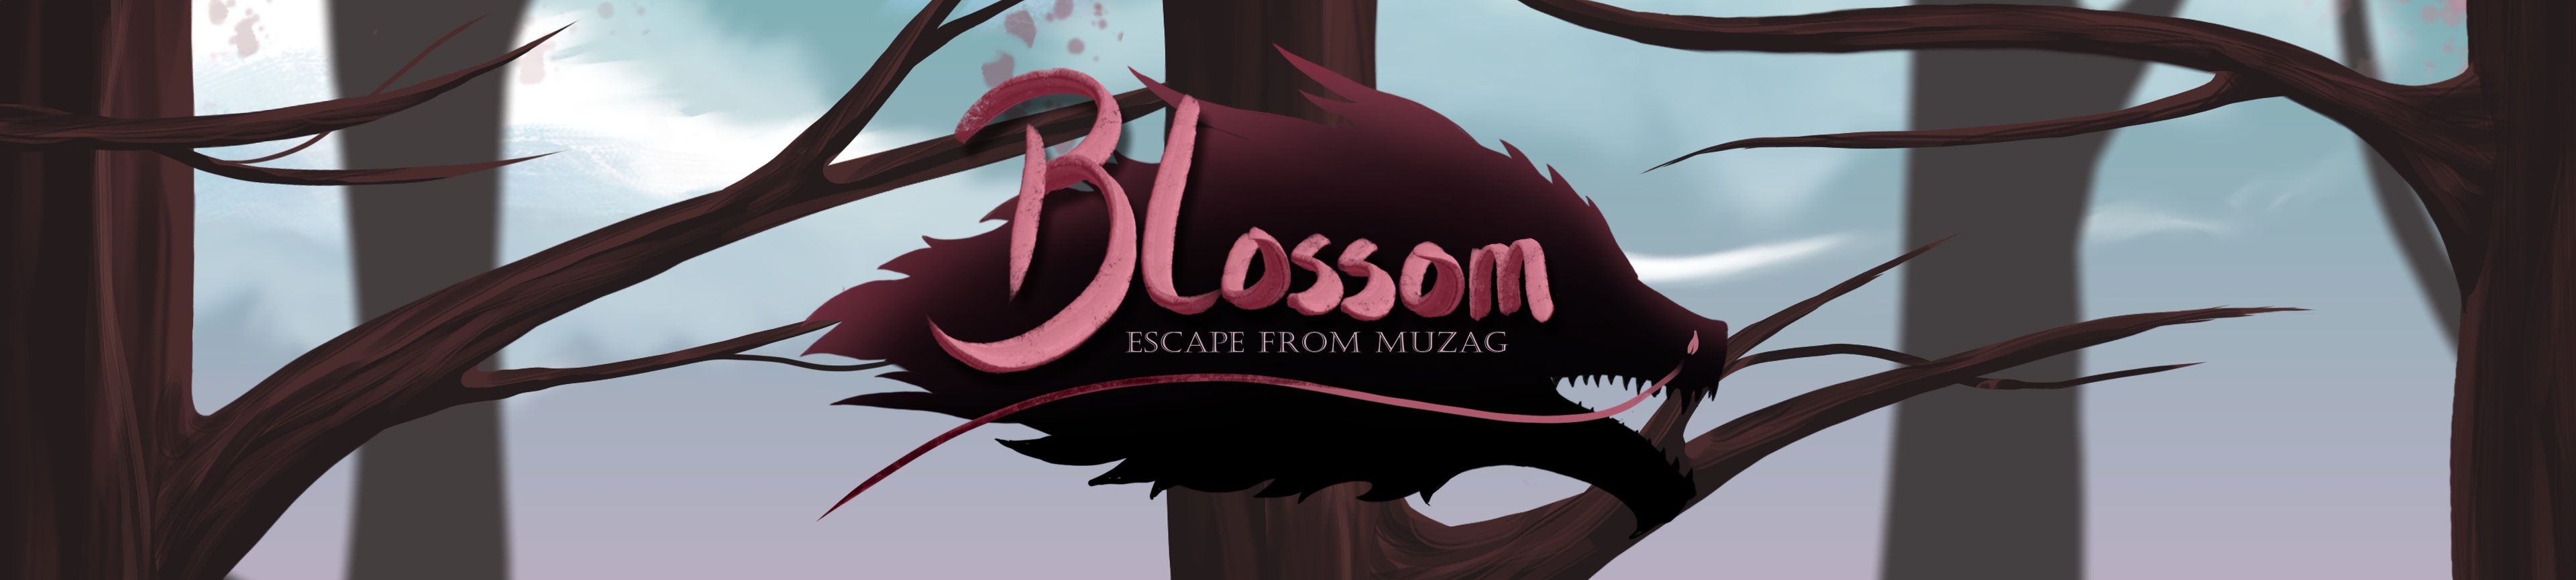 Blossom; Escape From Muzag